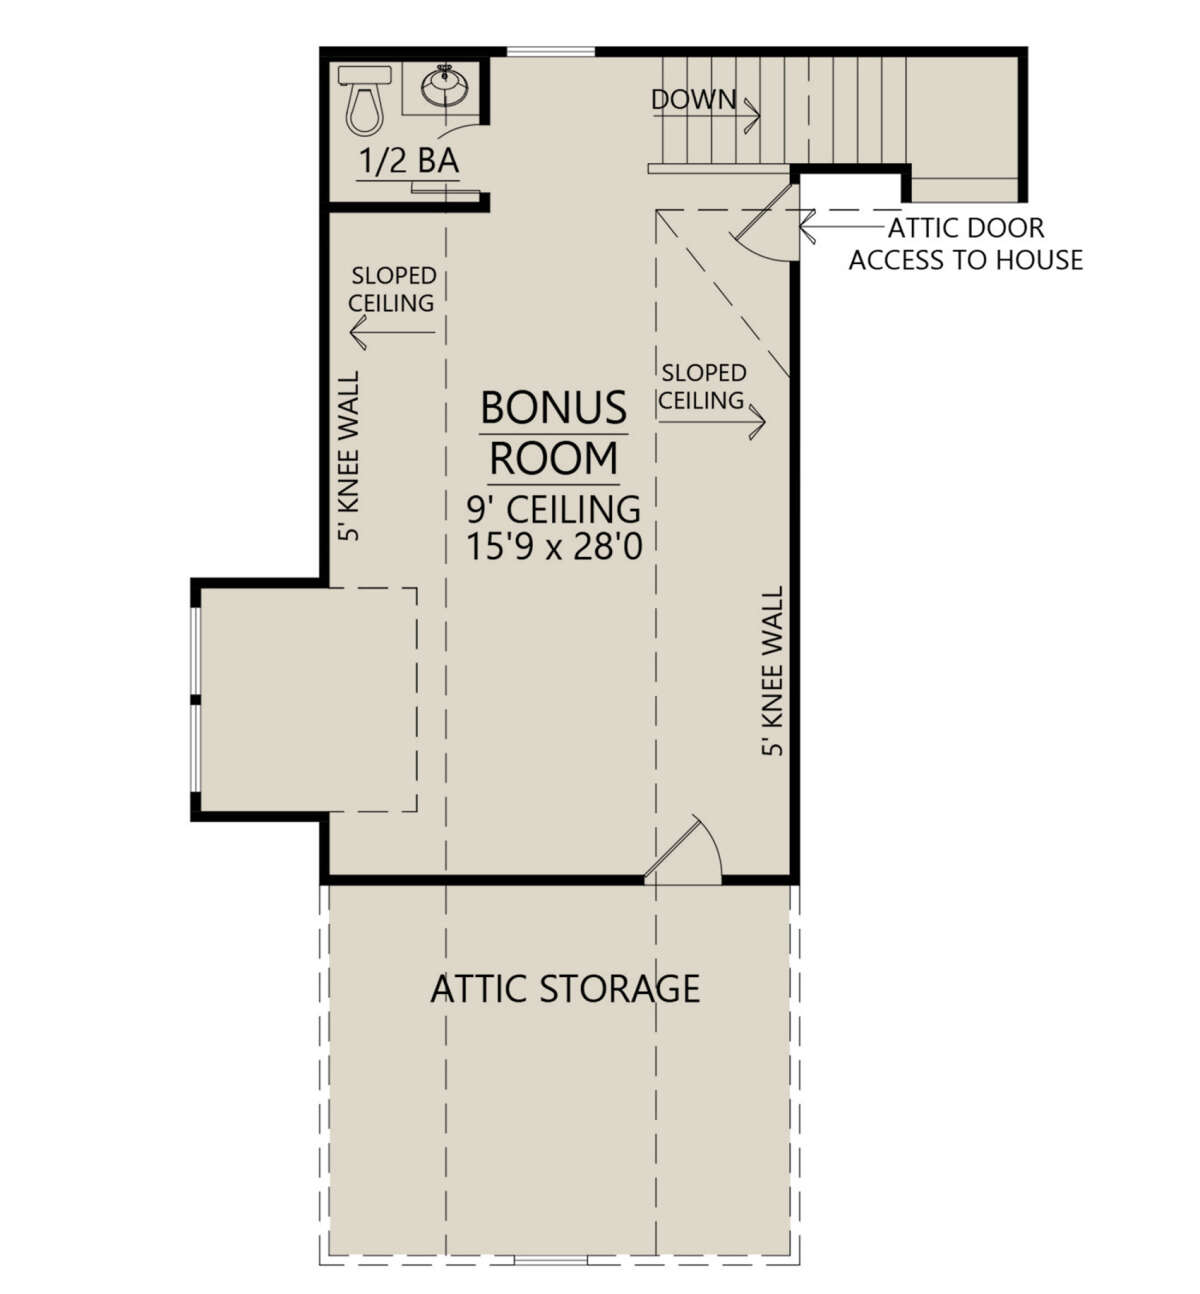 Bonus Room for House Plan #4534-00022